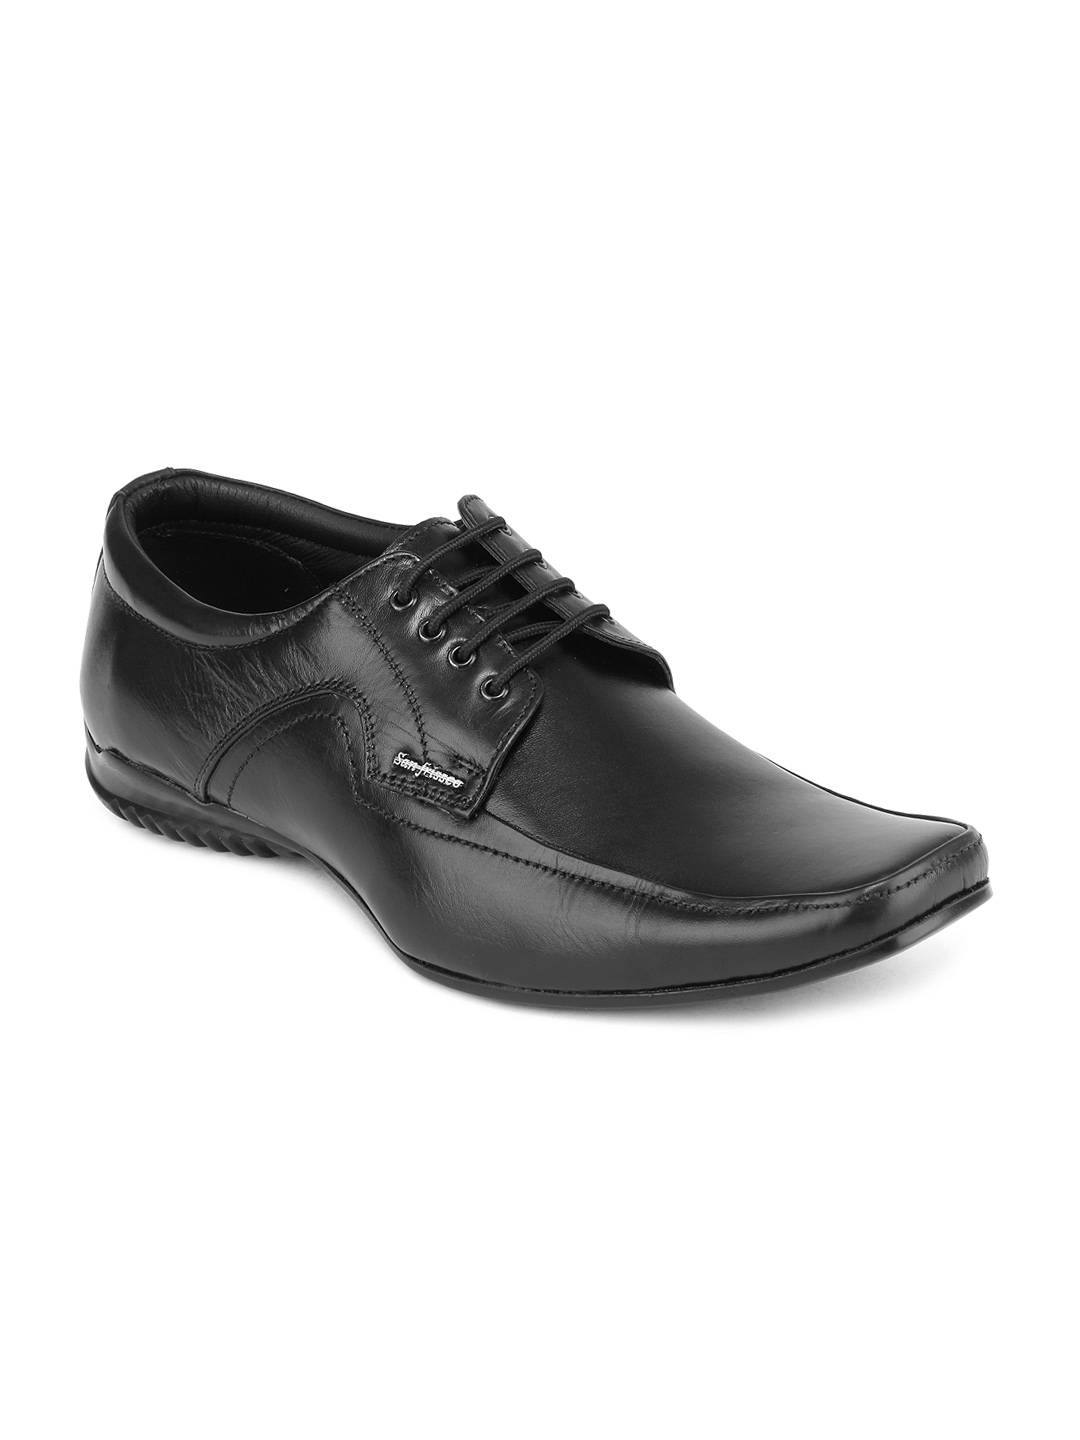 Buy San Frissco Men Black Leather Formal Shoes - Formal Shoes for Men ...